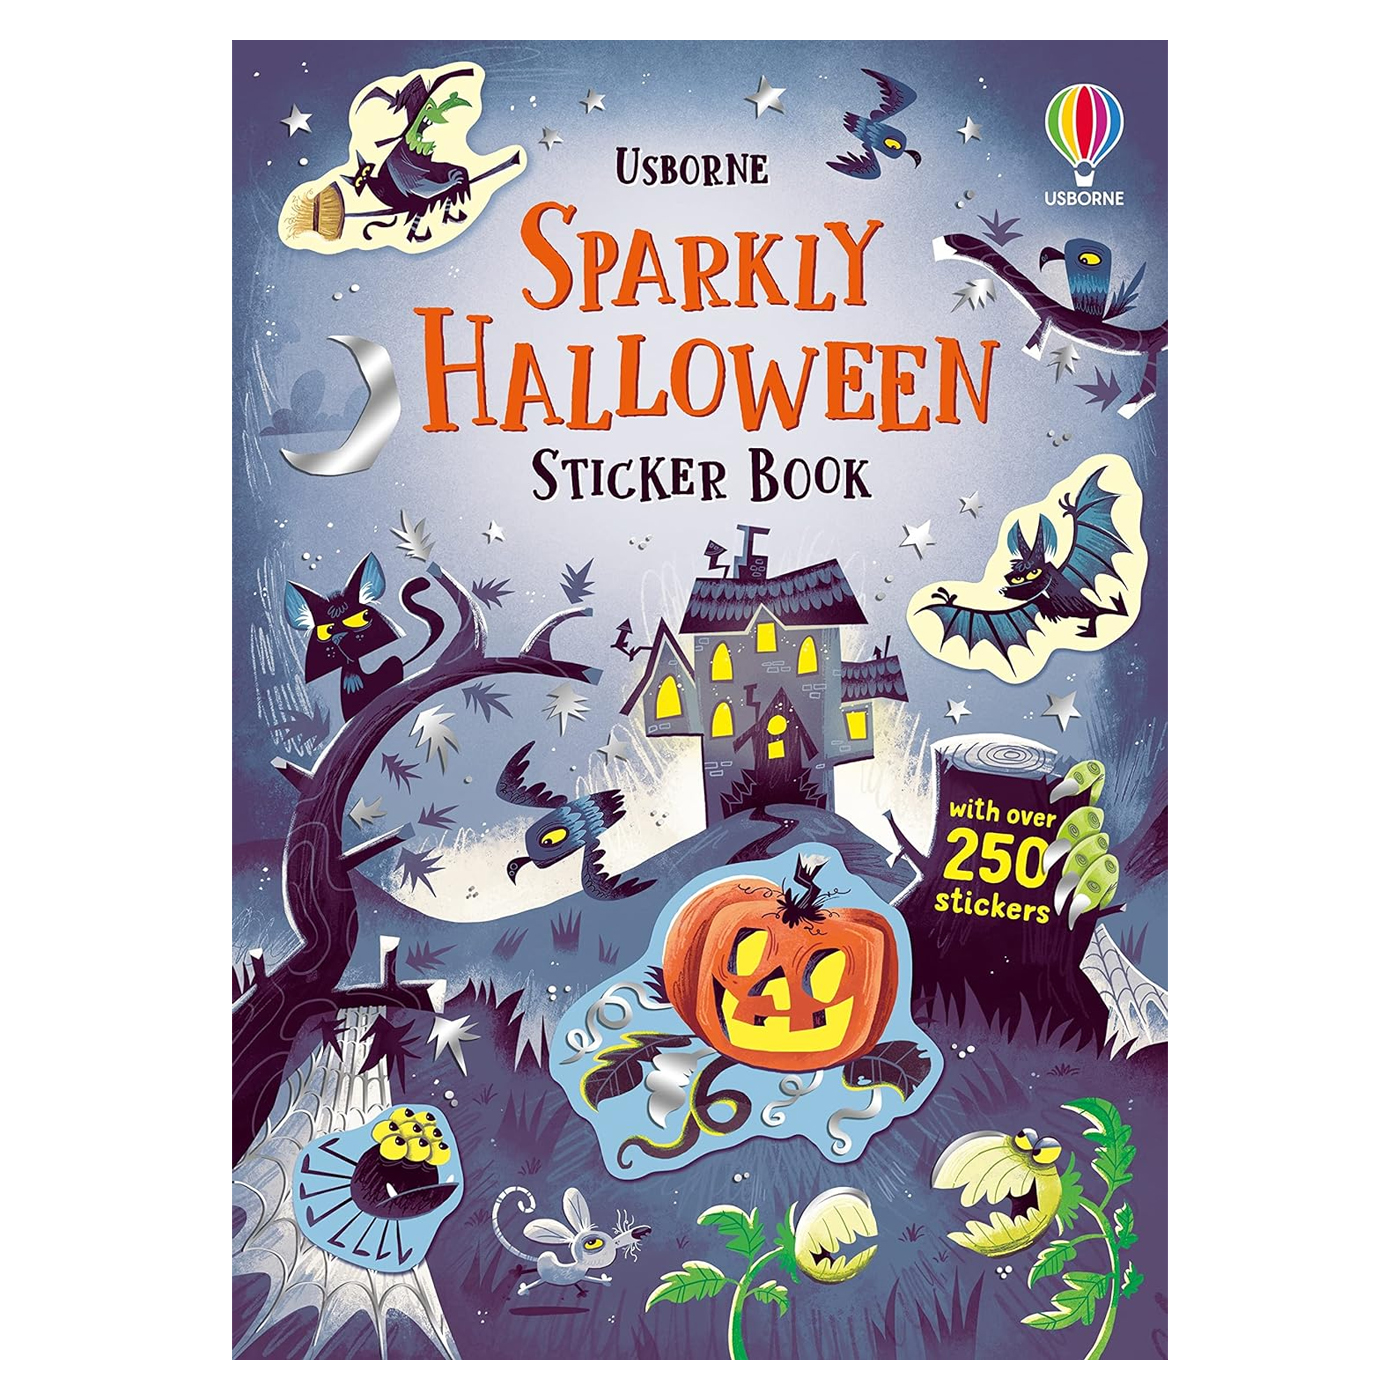 USBORNE Sparkly Hallooween Sticker Book